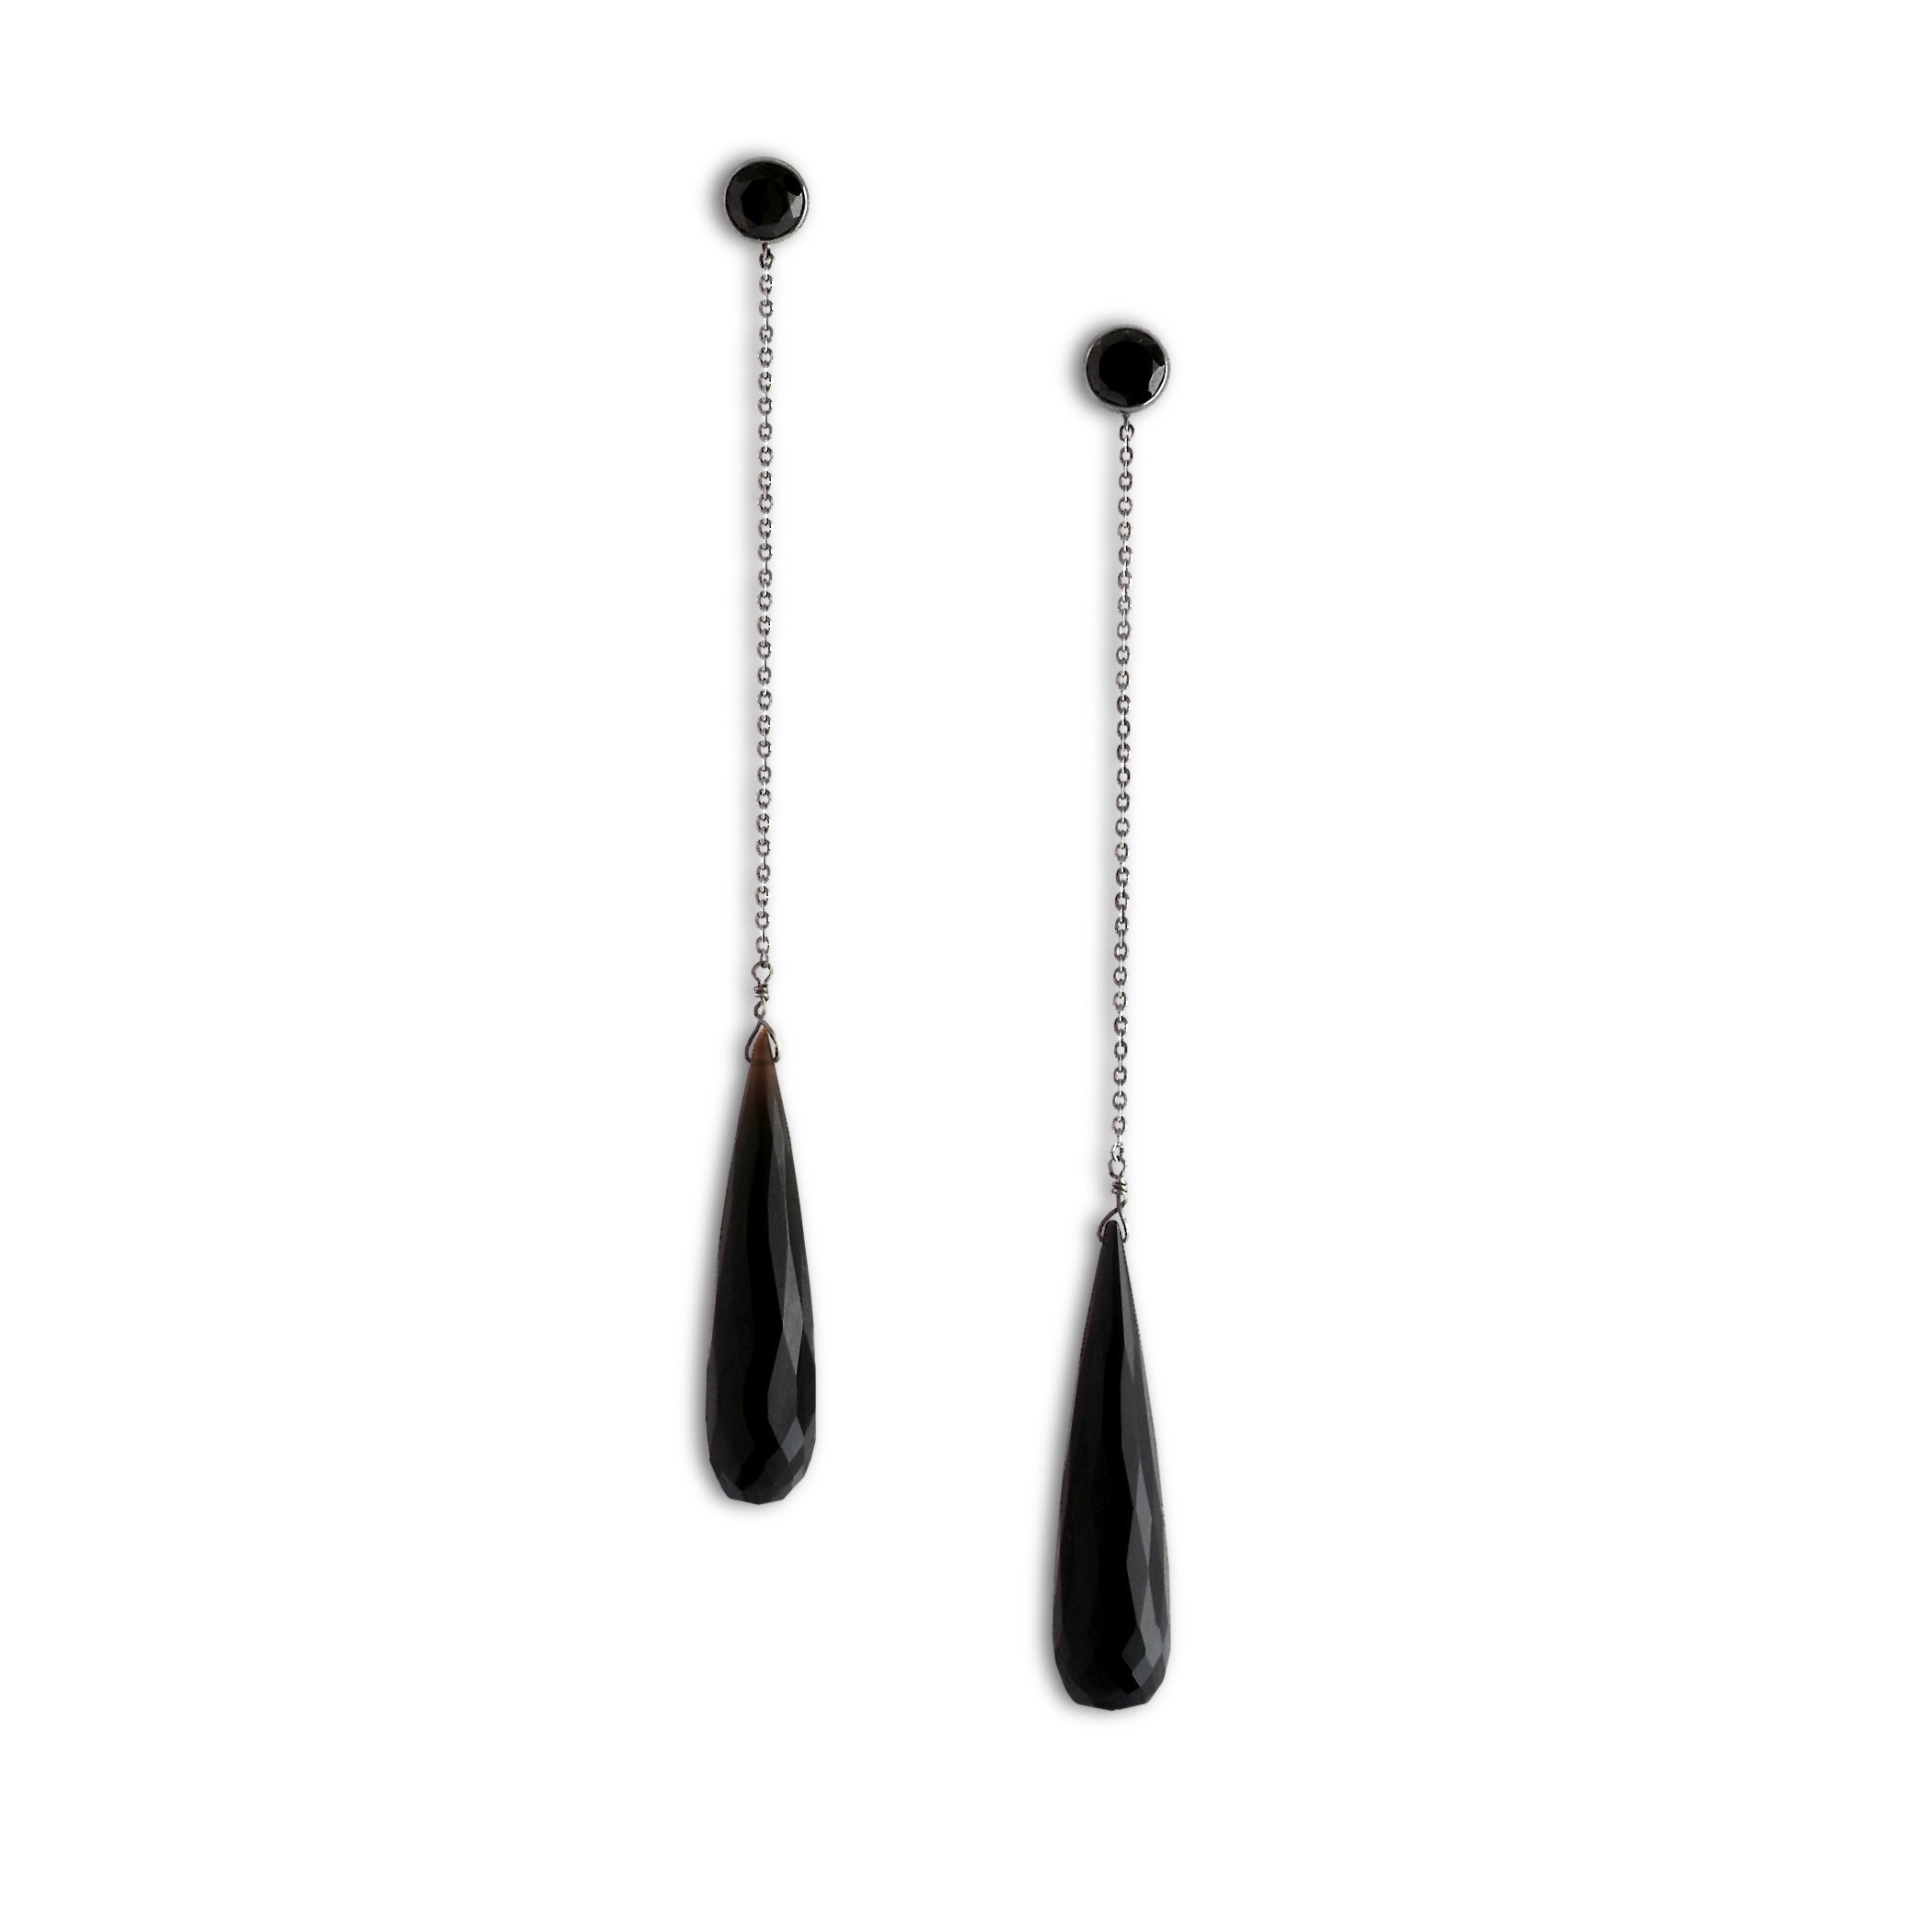 Black-onyx-briolette-cut-drop-ear-pendants-SN11a.jpg